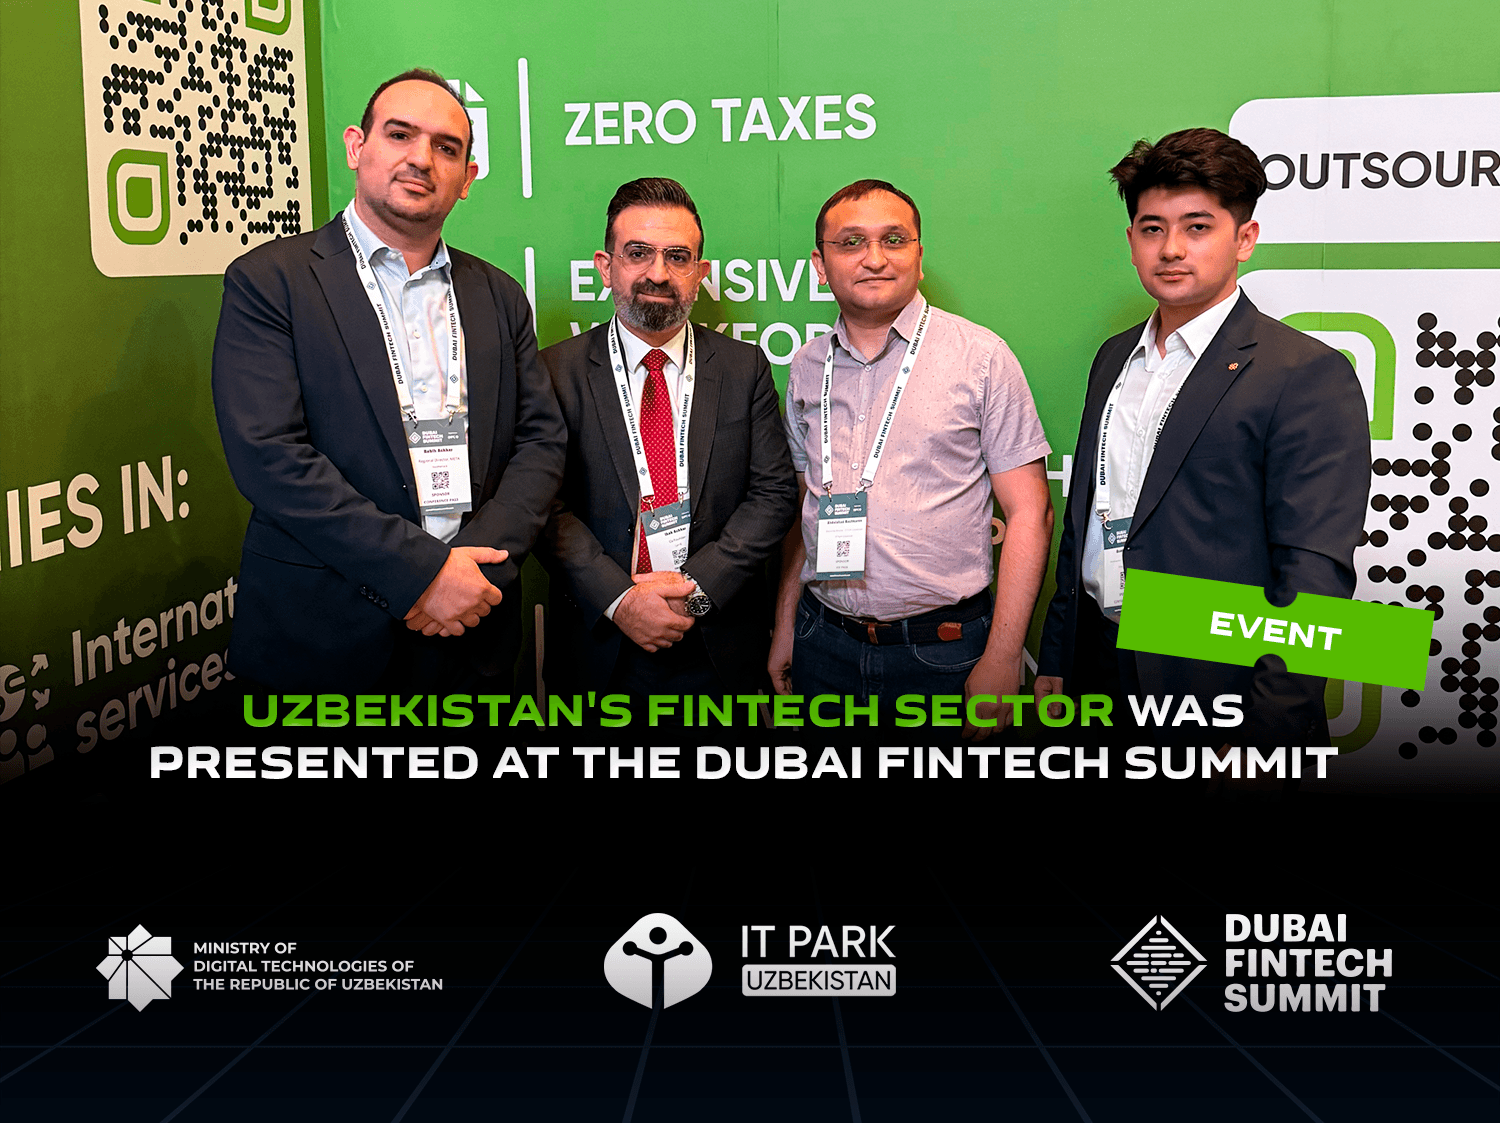 Uzbekistan’s fintech sector showcased at Dubai Fintech Summit